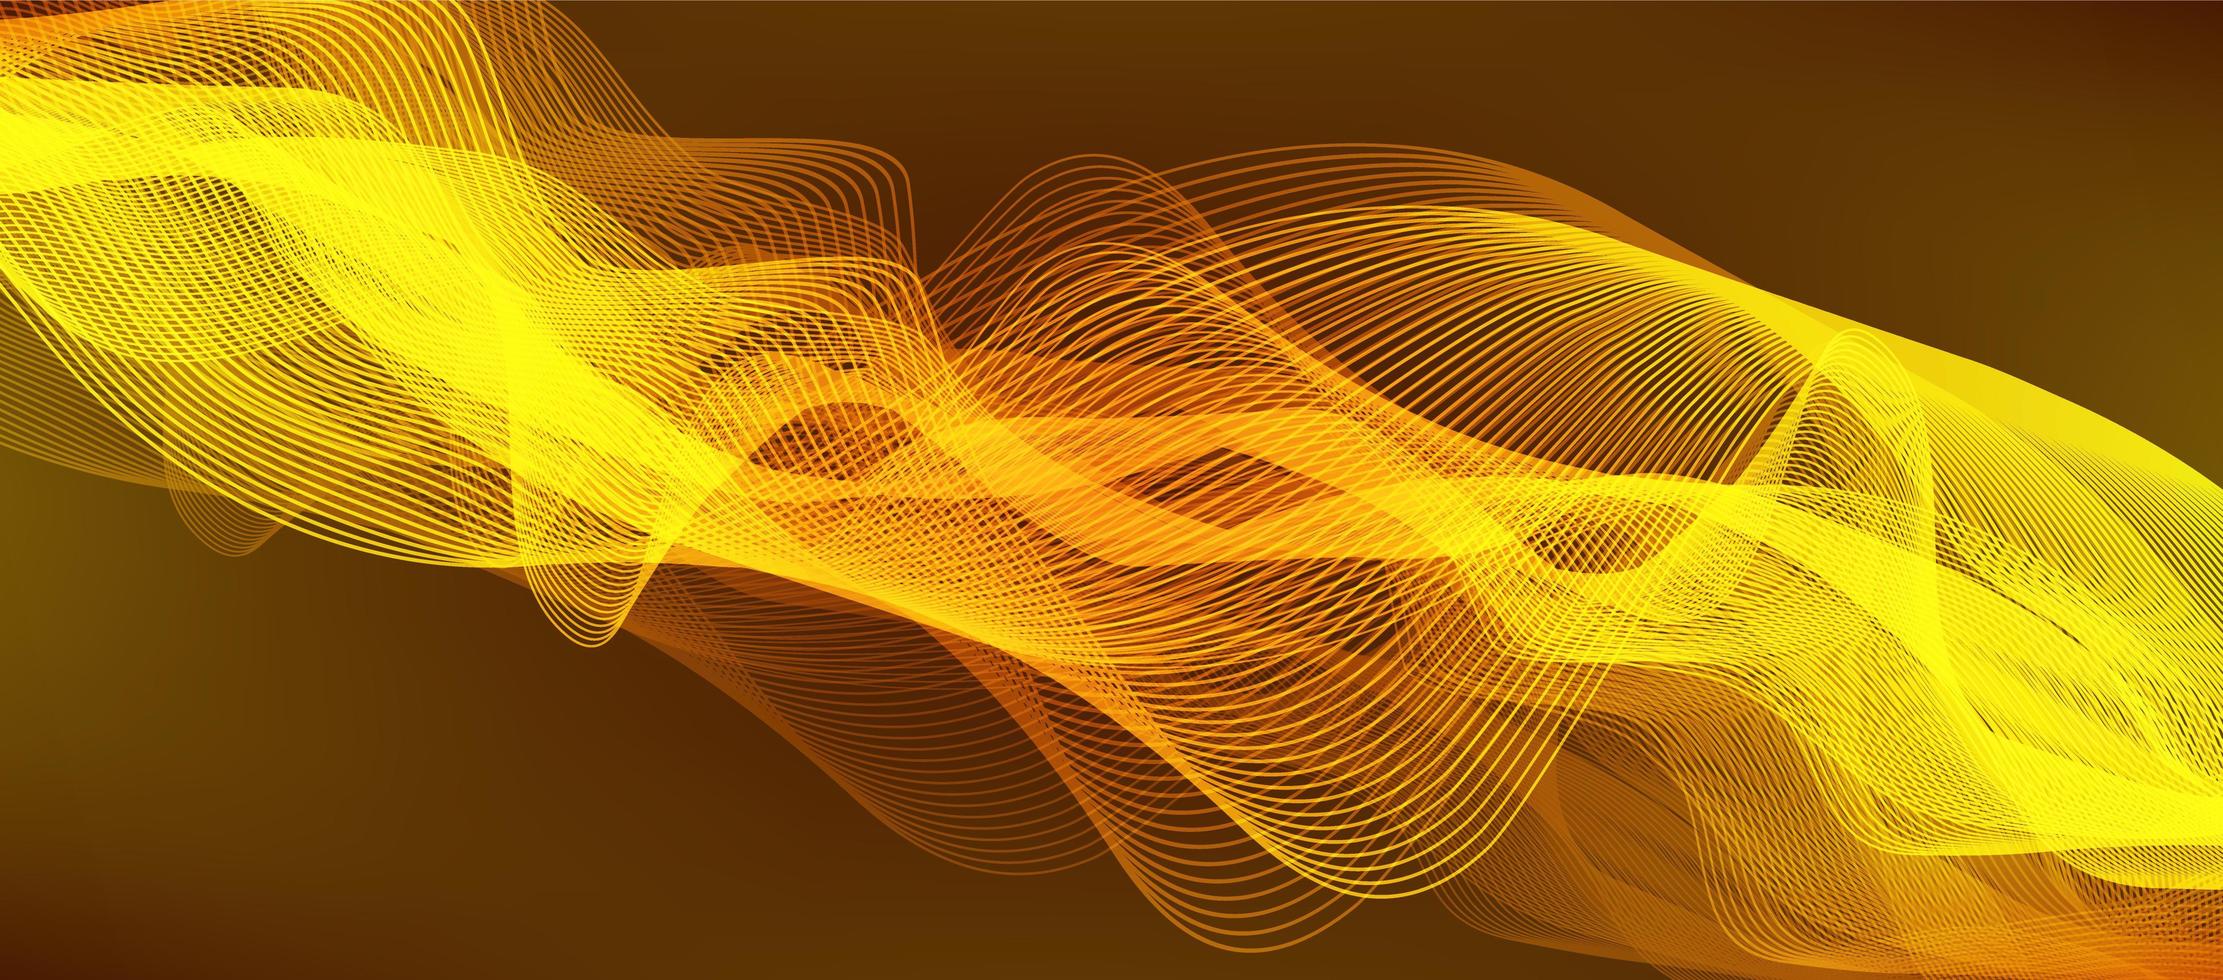 guld digital ljudvåg bakgrund, musik och högteknologiska diagram koncept, design för musikstudio och vetenskap, vektorillustration. vektor